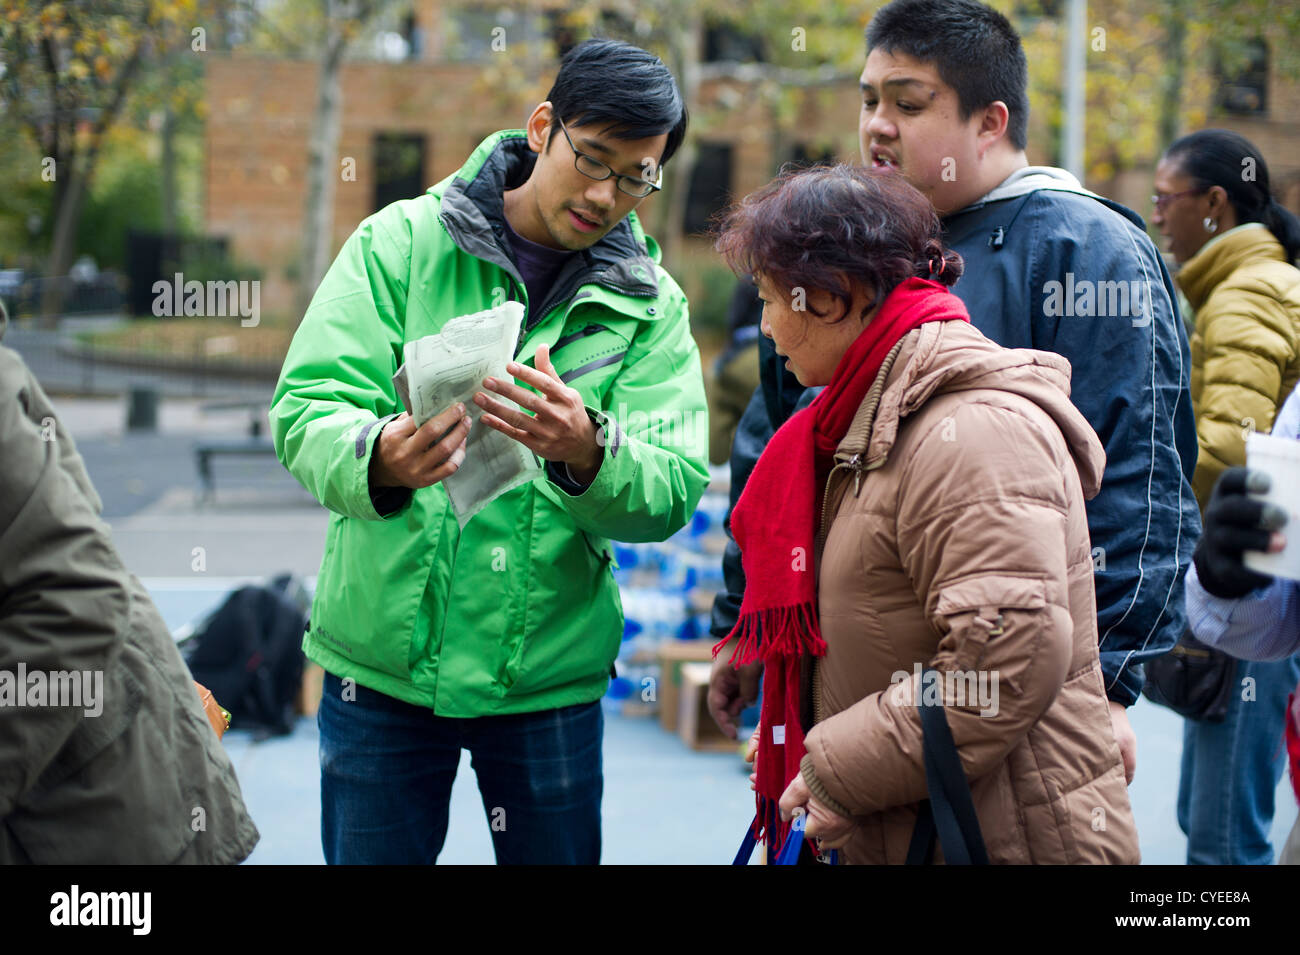 Pronto a mangiare pasti e acqua minerale in bottiglia sono distribuiti a persone nel quartiere di Chelsea di New York Foto Stock